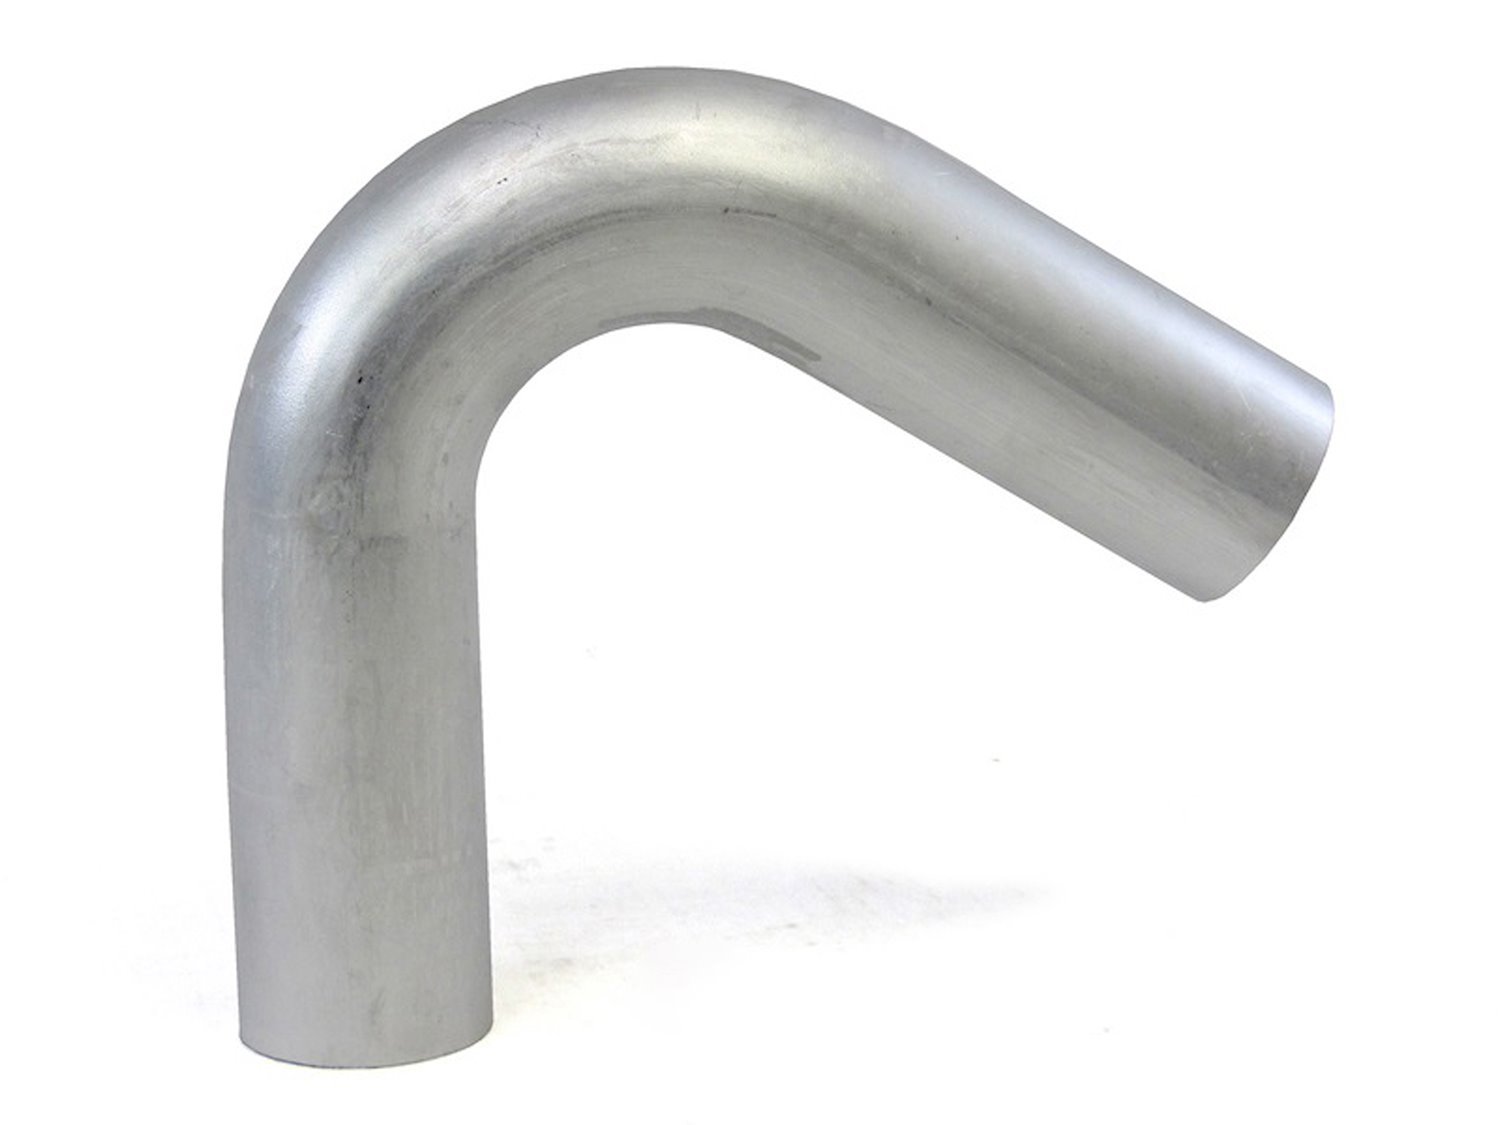 AT120-225-CLR-3 Aluminum Elbow Tube, 6061 Aluminum, 120-Degree Bend Elbow Tubing, 2-1/4 in. OD, Large Radius, 3 in. CLR